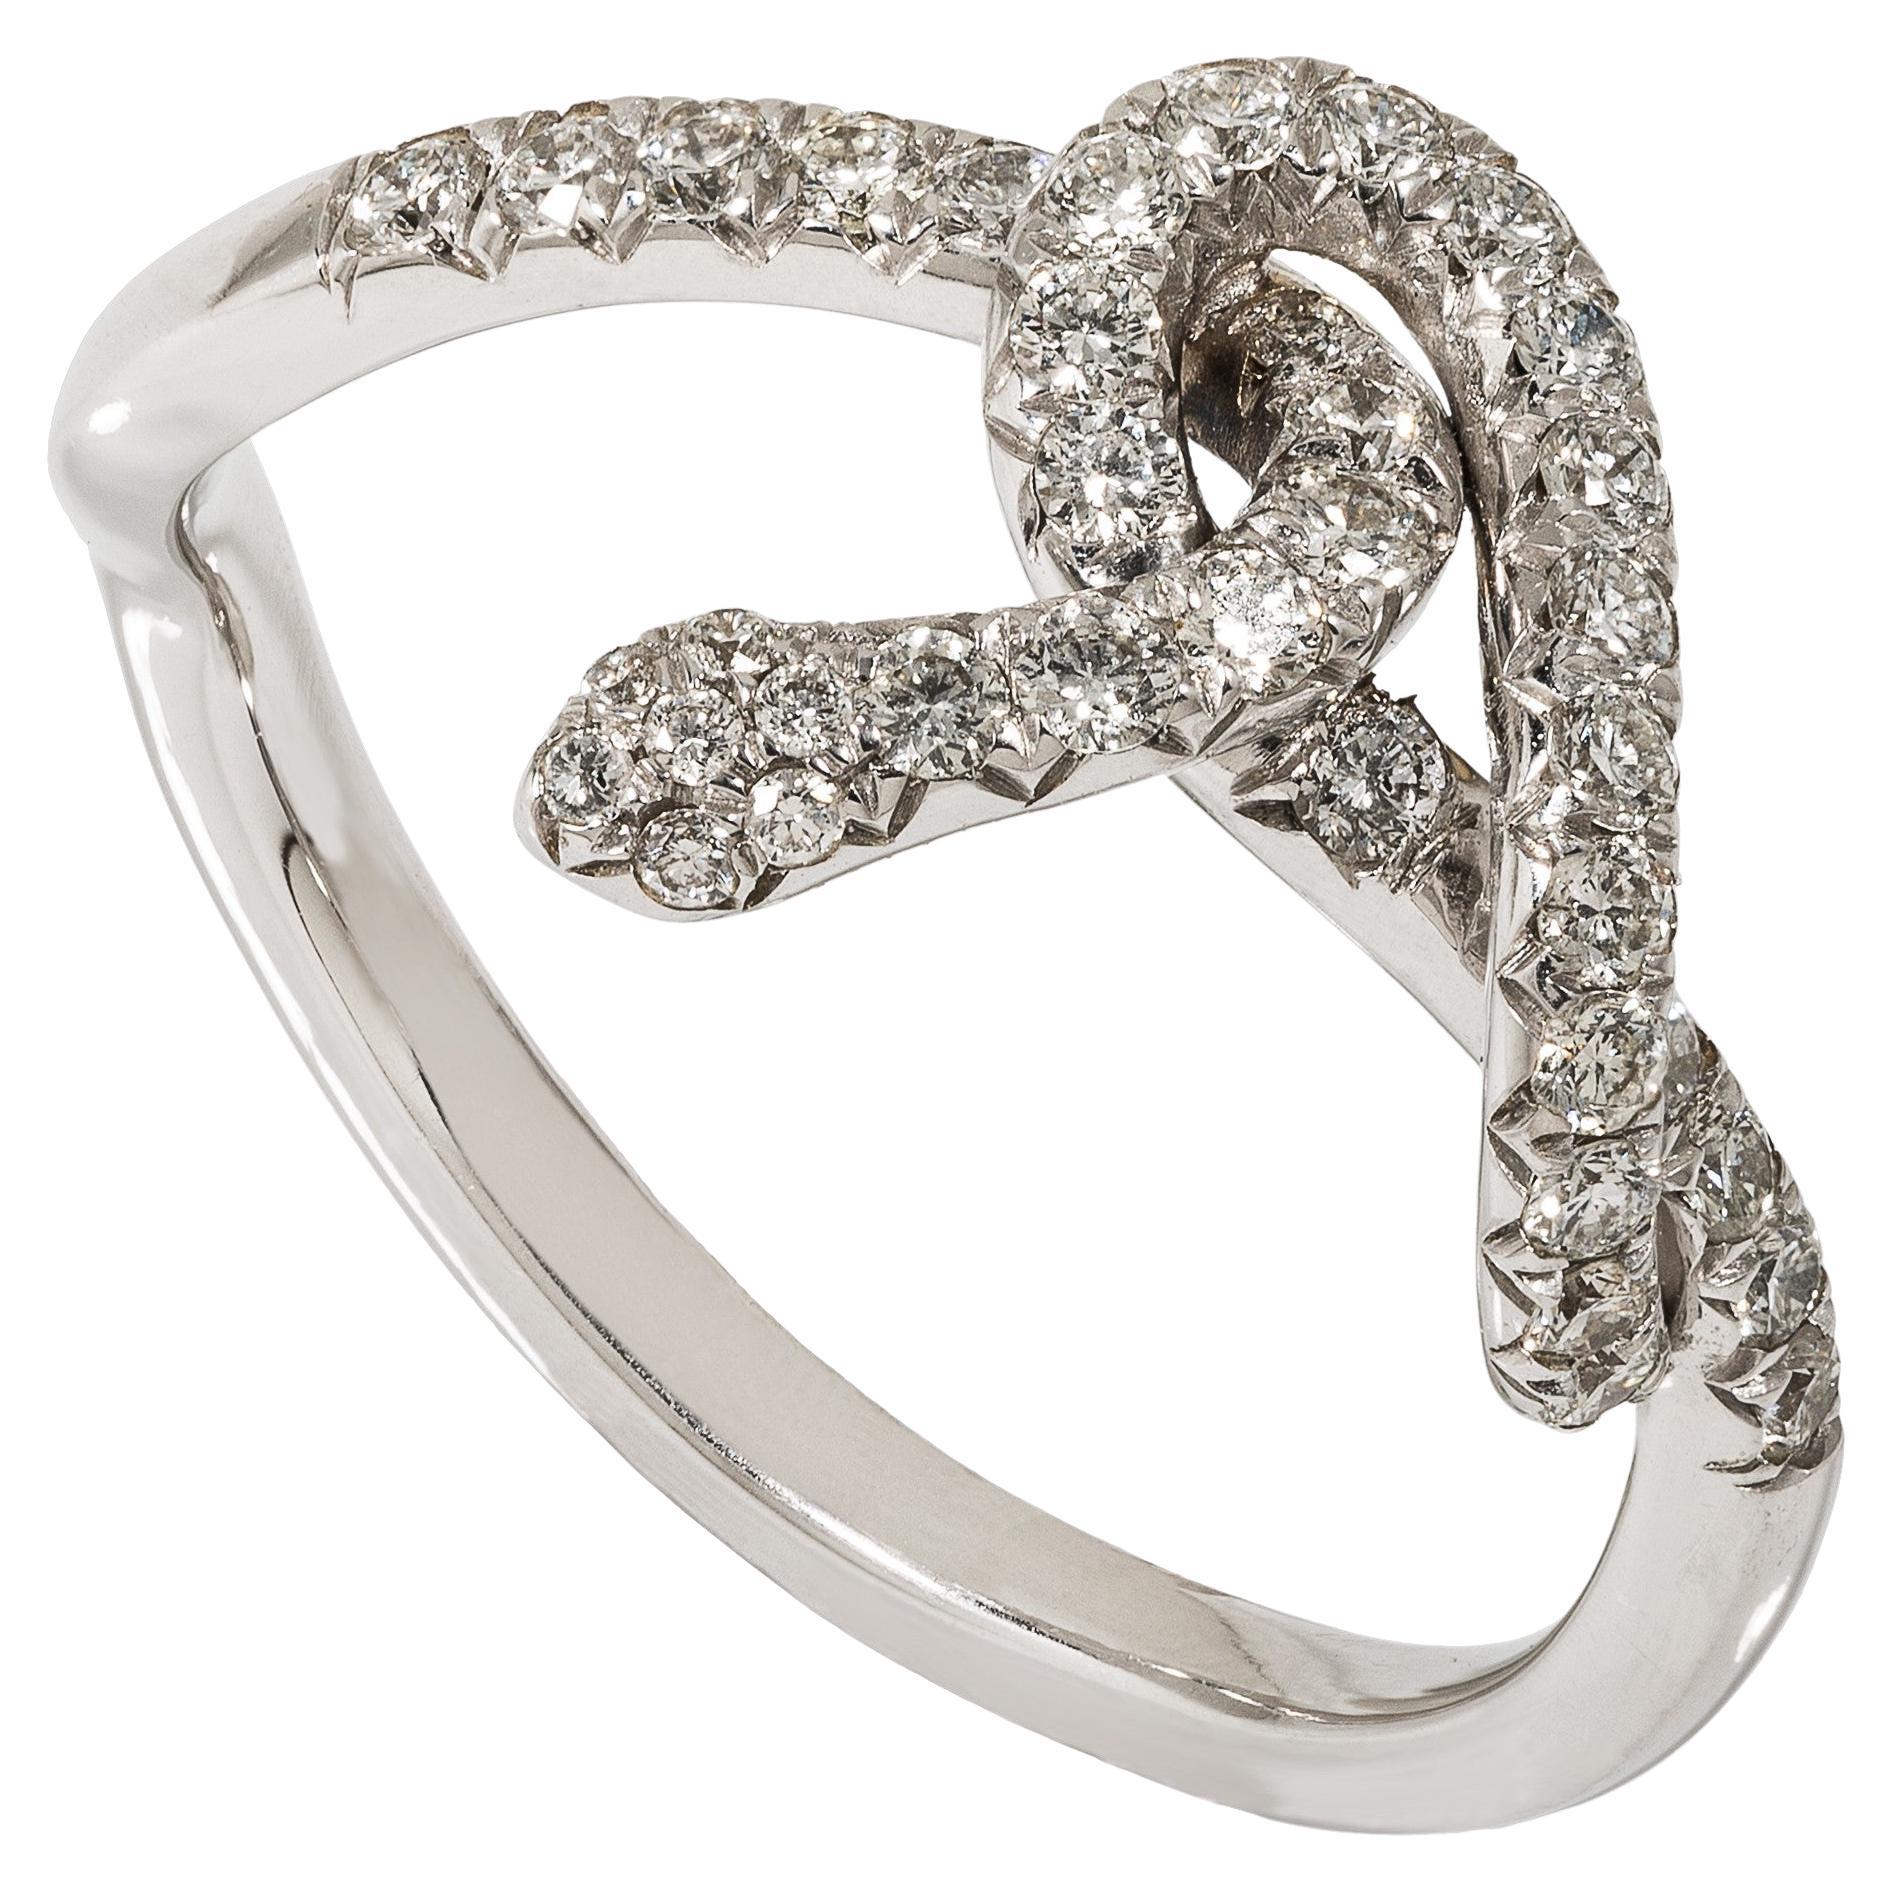 Rosior Diamond "Snake" Ring set in White Gold